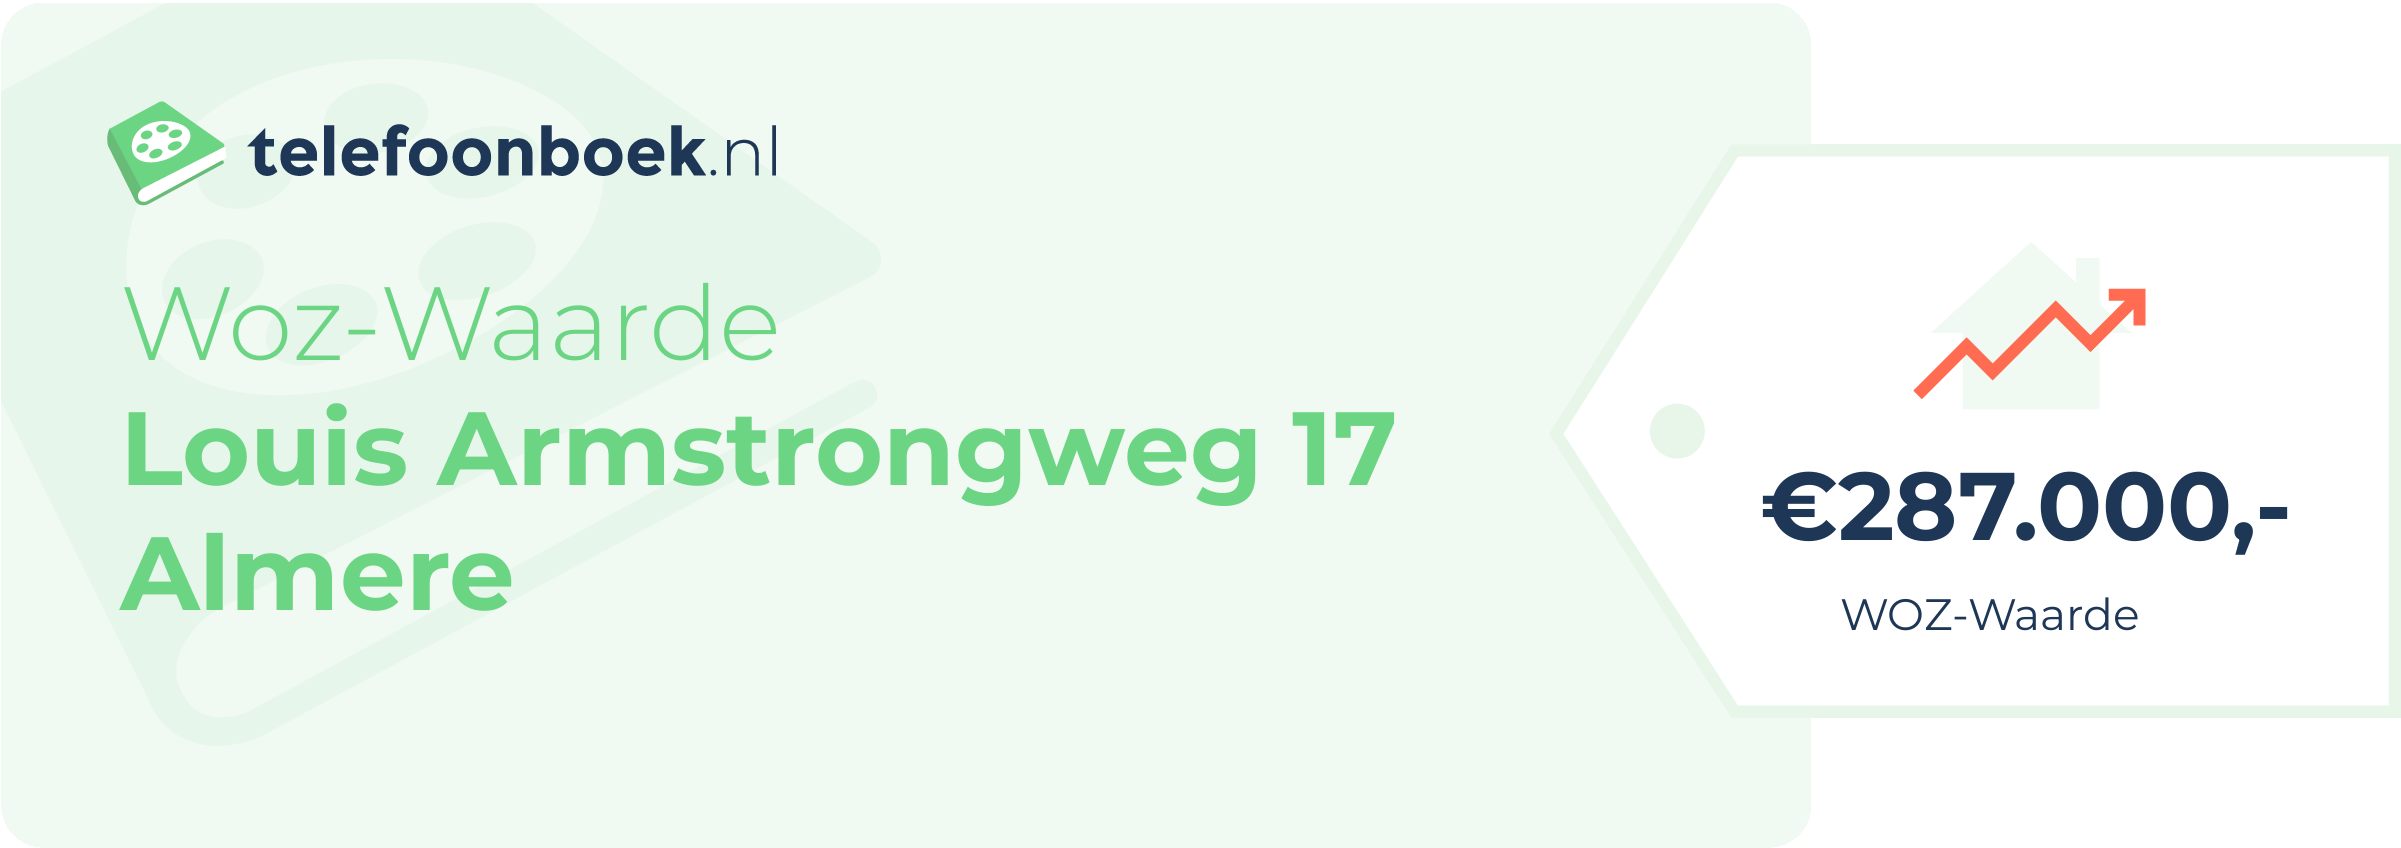 WOZ-waarde Louis Armstrongweg 17 Almere